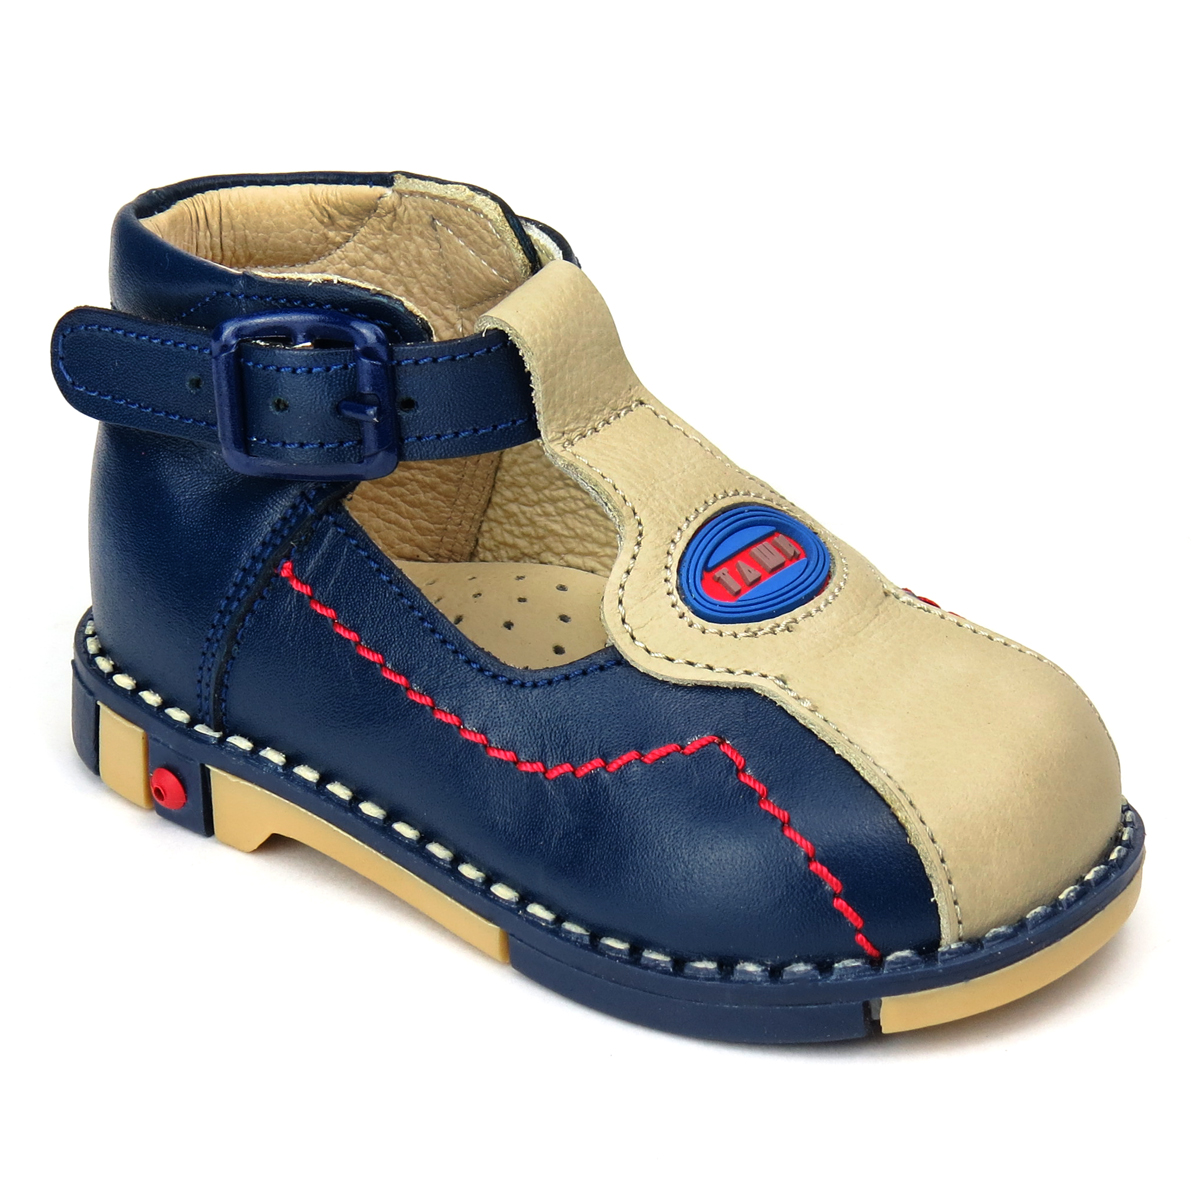 Туфли для мальчика Таши Орто, цвет: темно-синий, светло-бежевый. 219-01. Размер 23